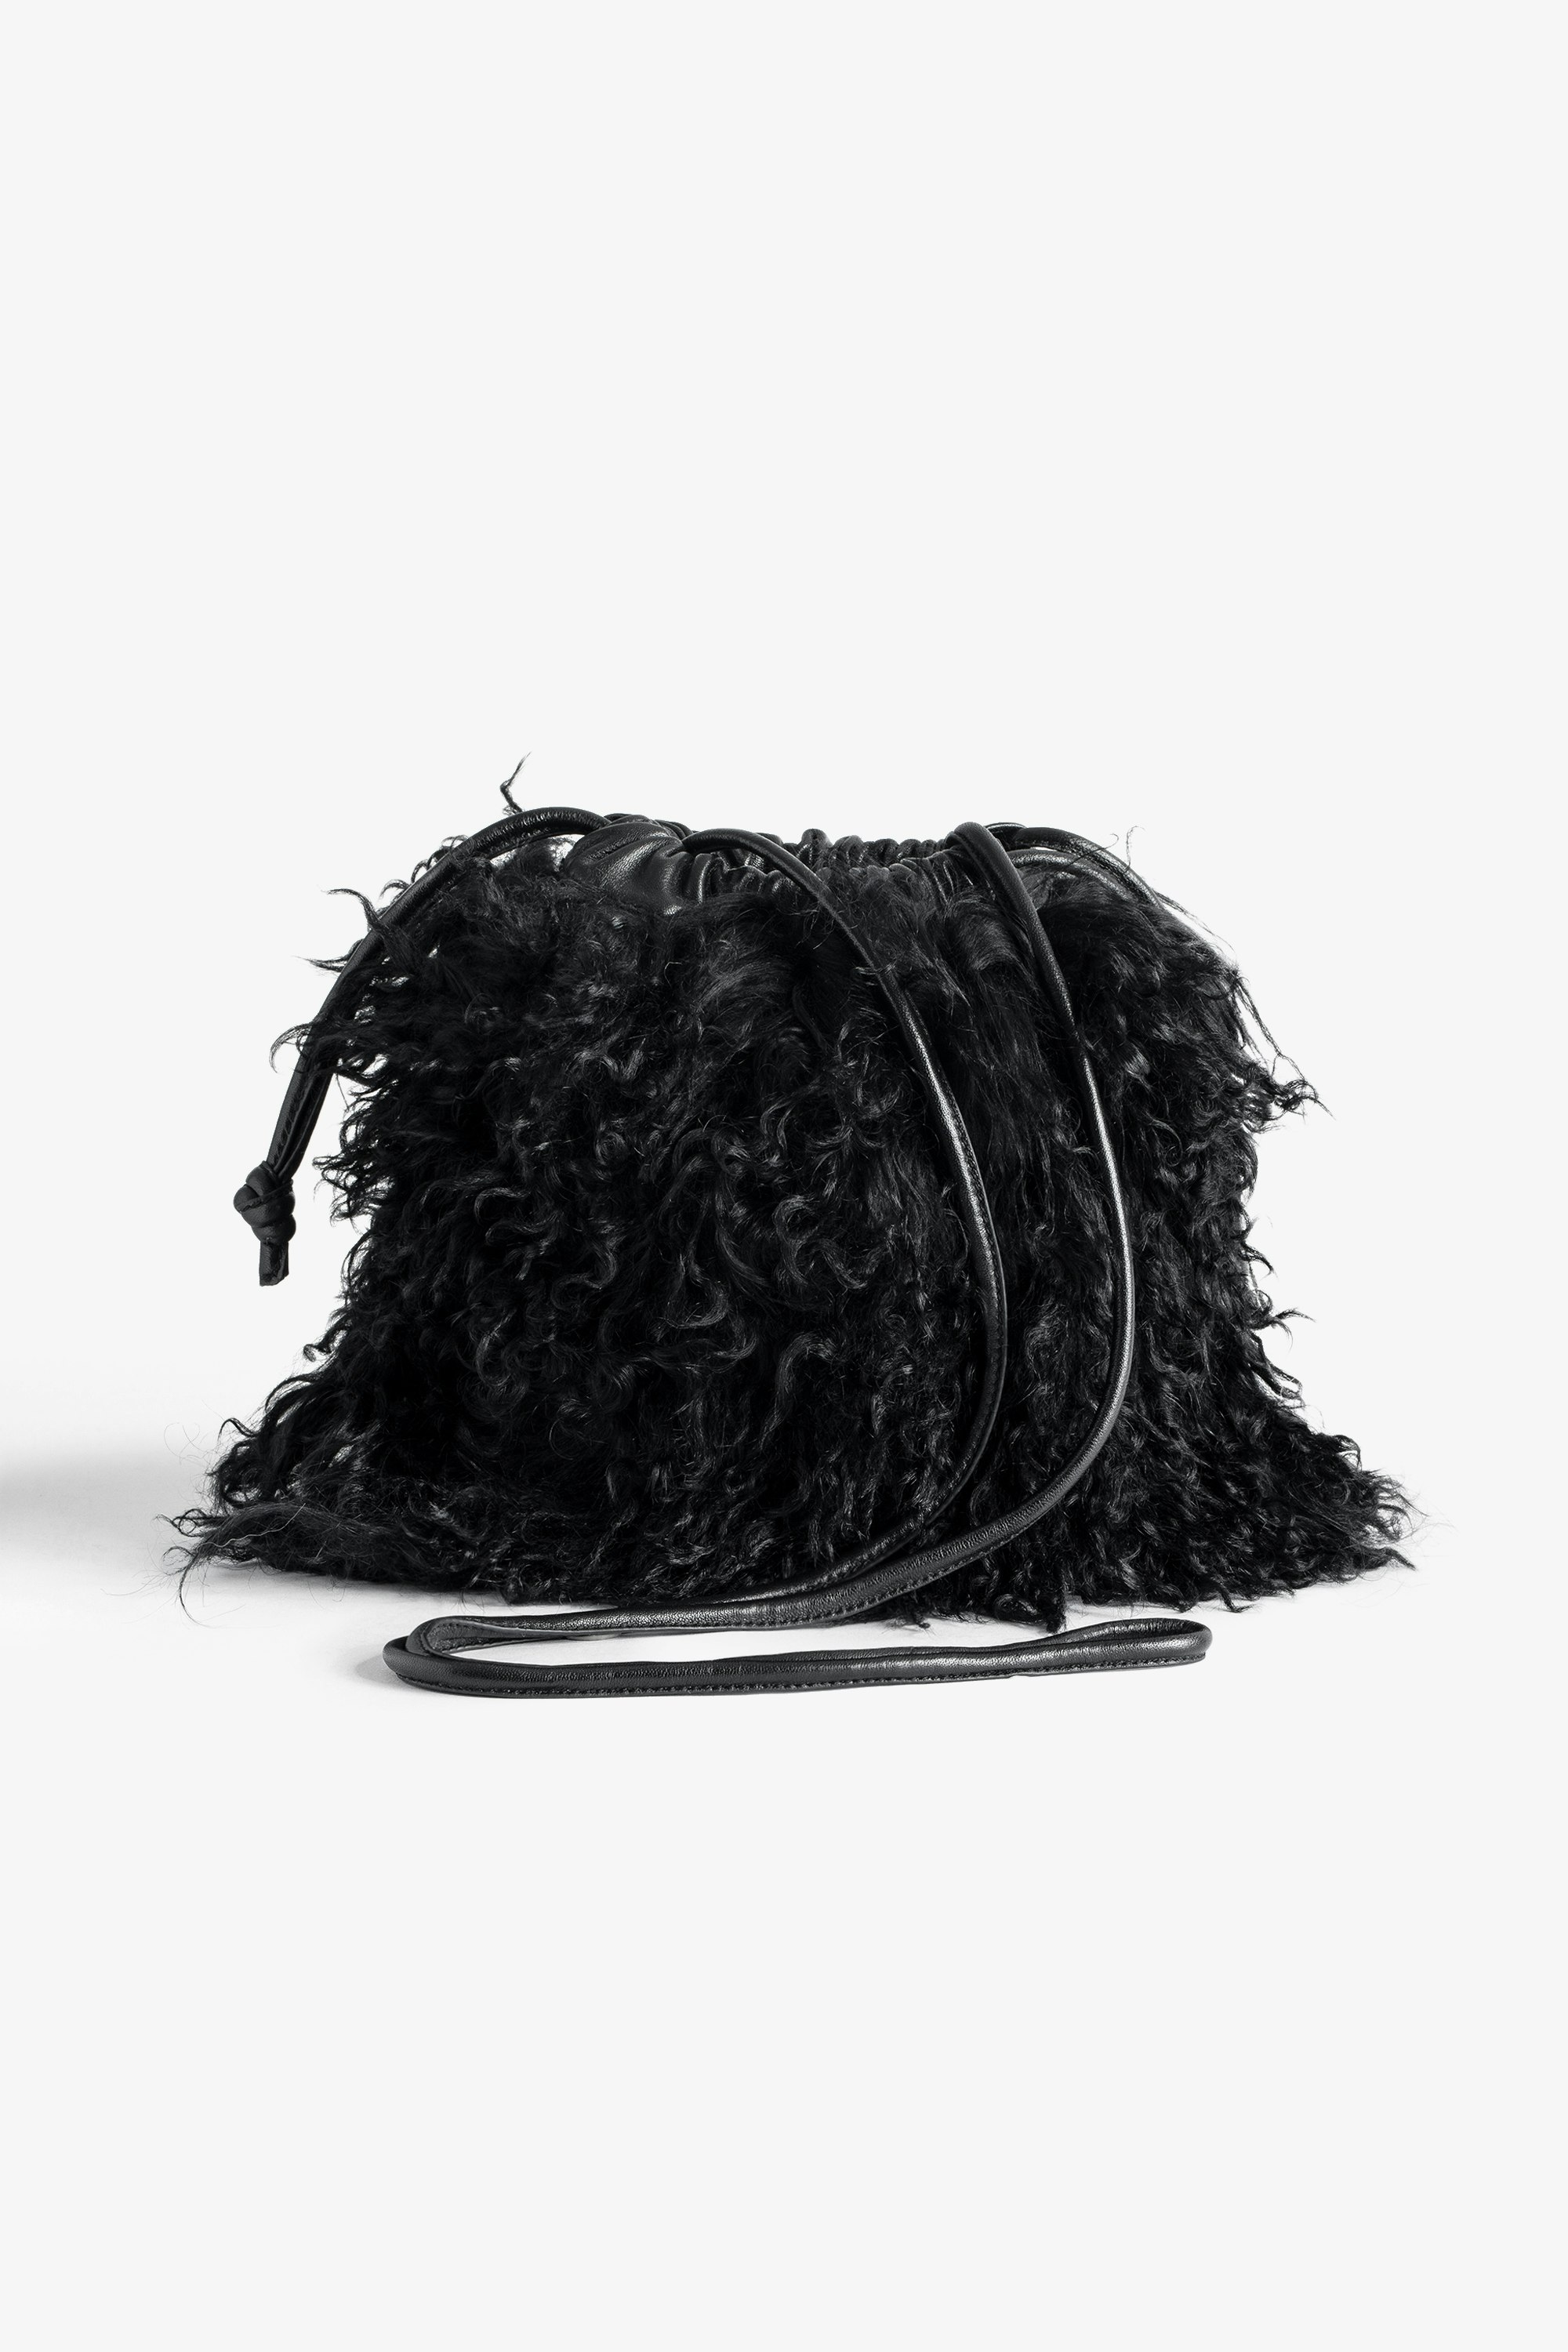 Borsa Rock To Go Frenzy shearling - Piccola borsa a secchiello in pelle nera shearling con coulisse e tracolla da donna.